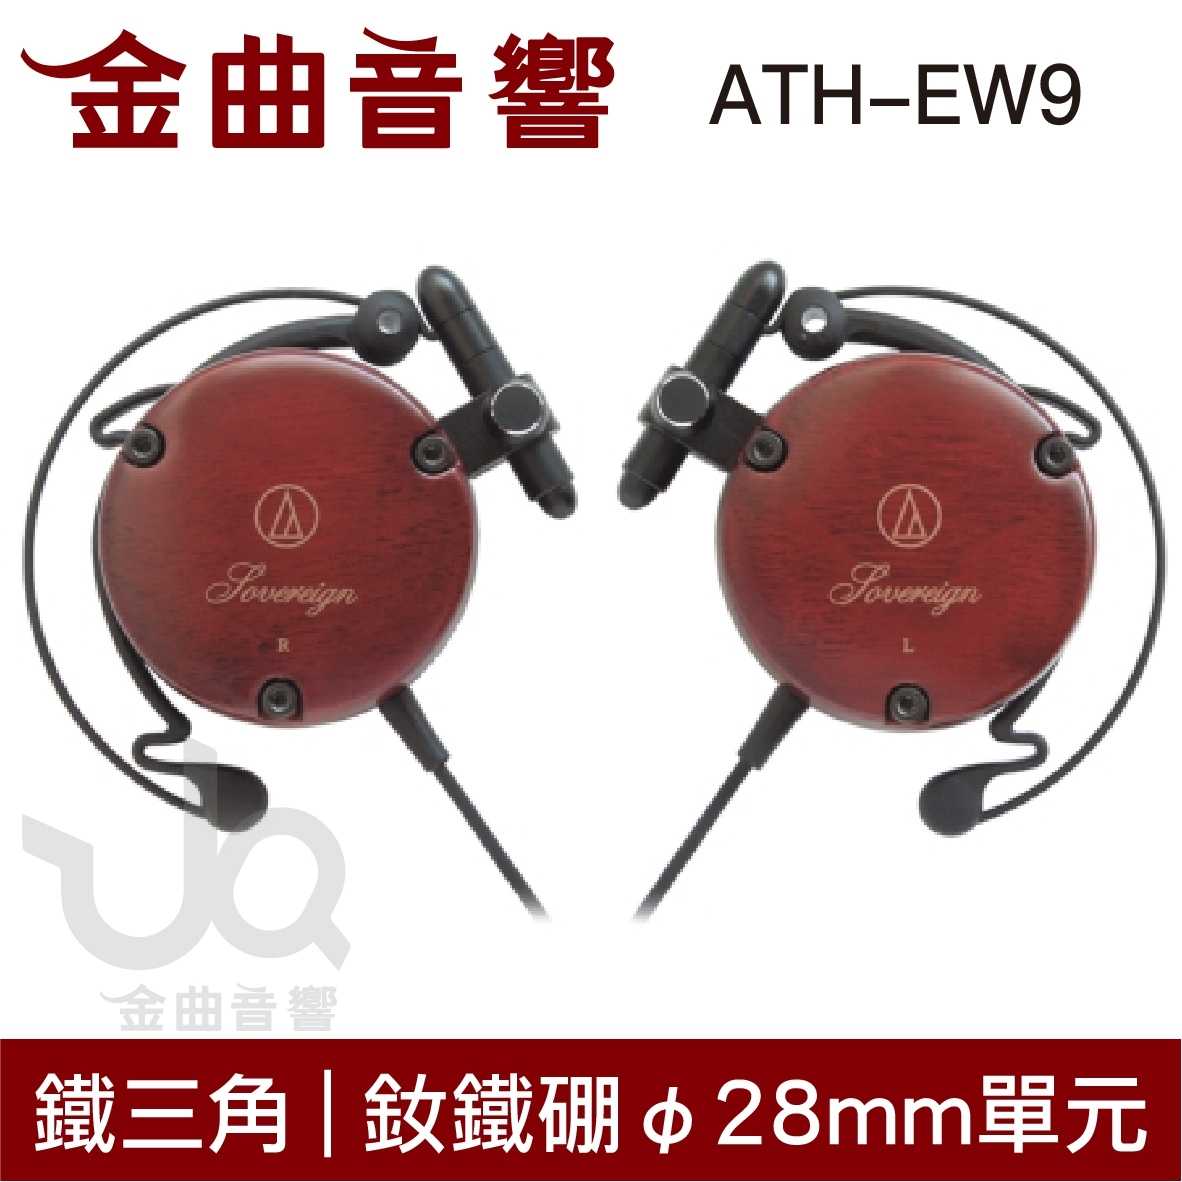 鐵三角 ATH-EW9 櫻花木 耳掛式 耳機 | 金曲音響